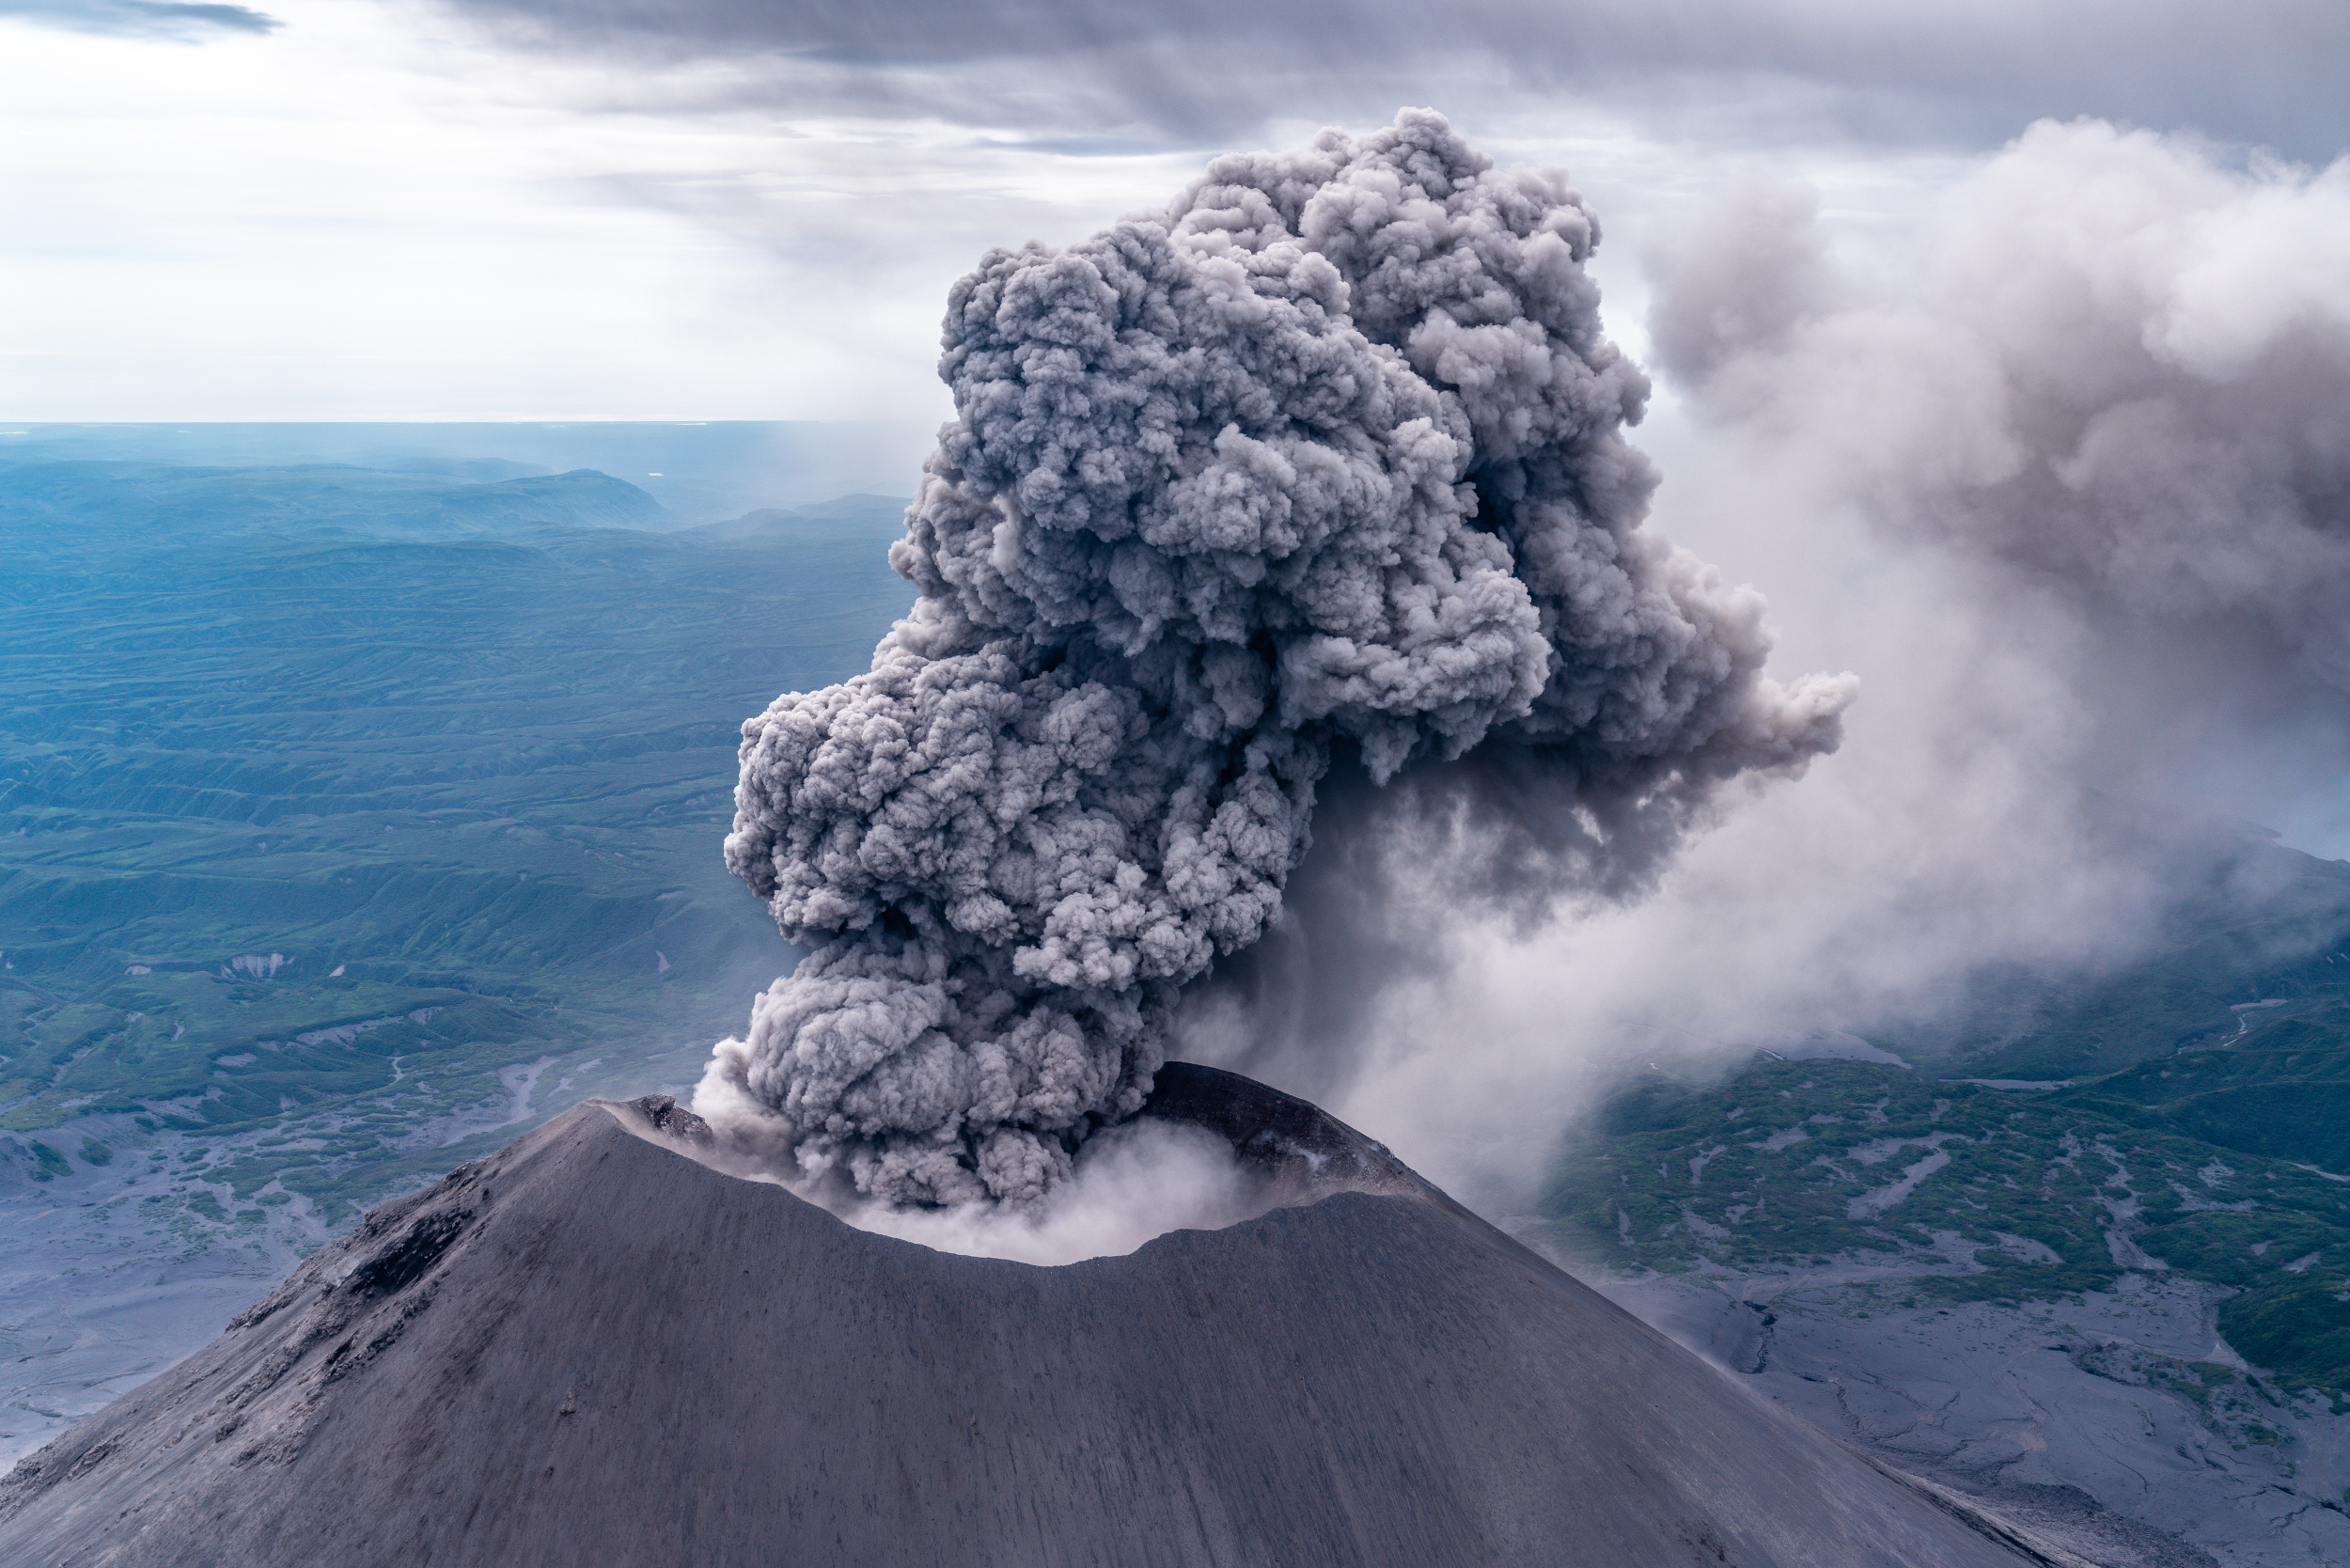 Сильные землетрясения извержения вулканов мощные. Карымская сопка вулкан. Вулкан Карымский, Камчатка. Карымская сопка вулкан извержение. Карымская сопка извержение.